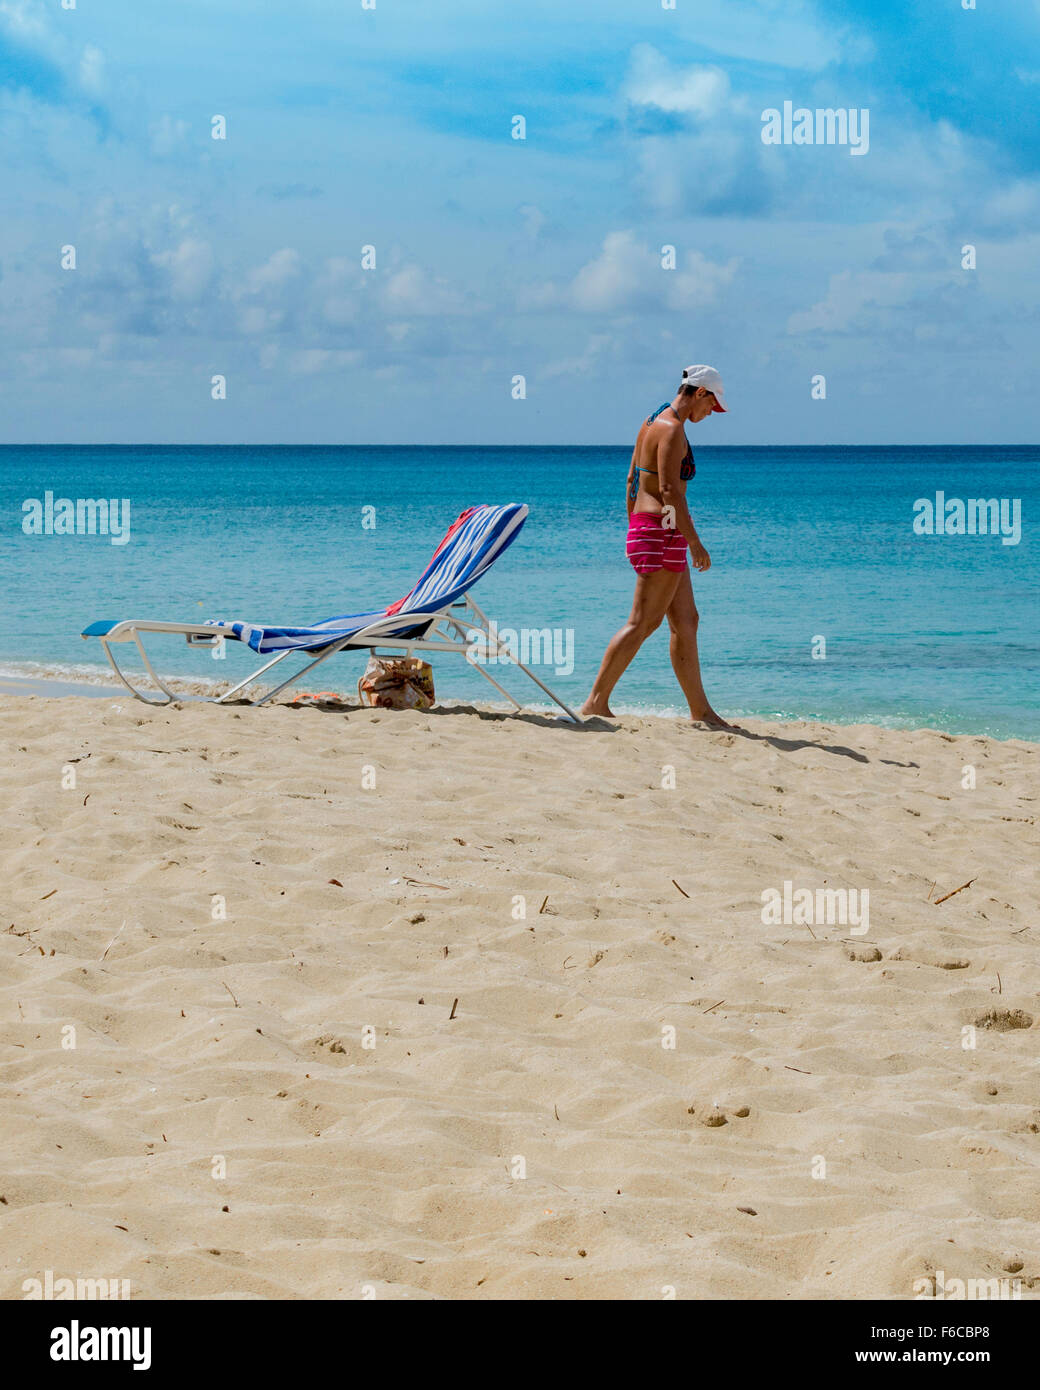 Eine Kaukasische Frau in ihren 40ern geht auf das Wasser zum Abkühlen nach dem Sonnen am Strand von St. Croix, Amerikanische Jungferninseln. Stockfoto